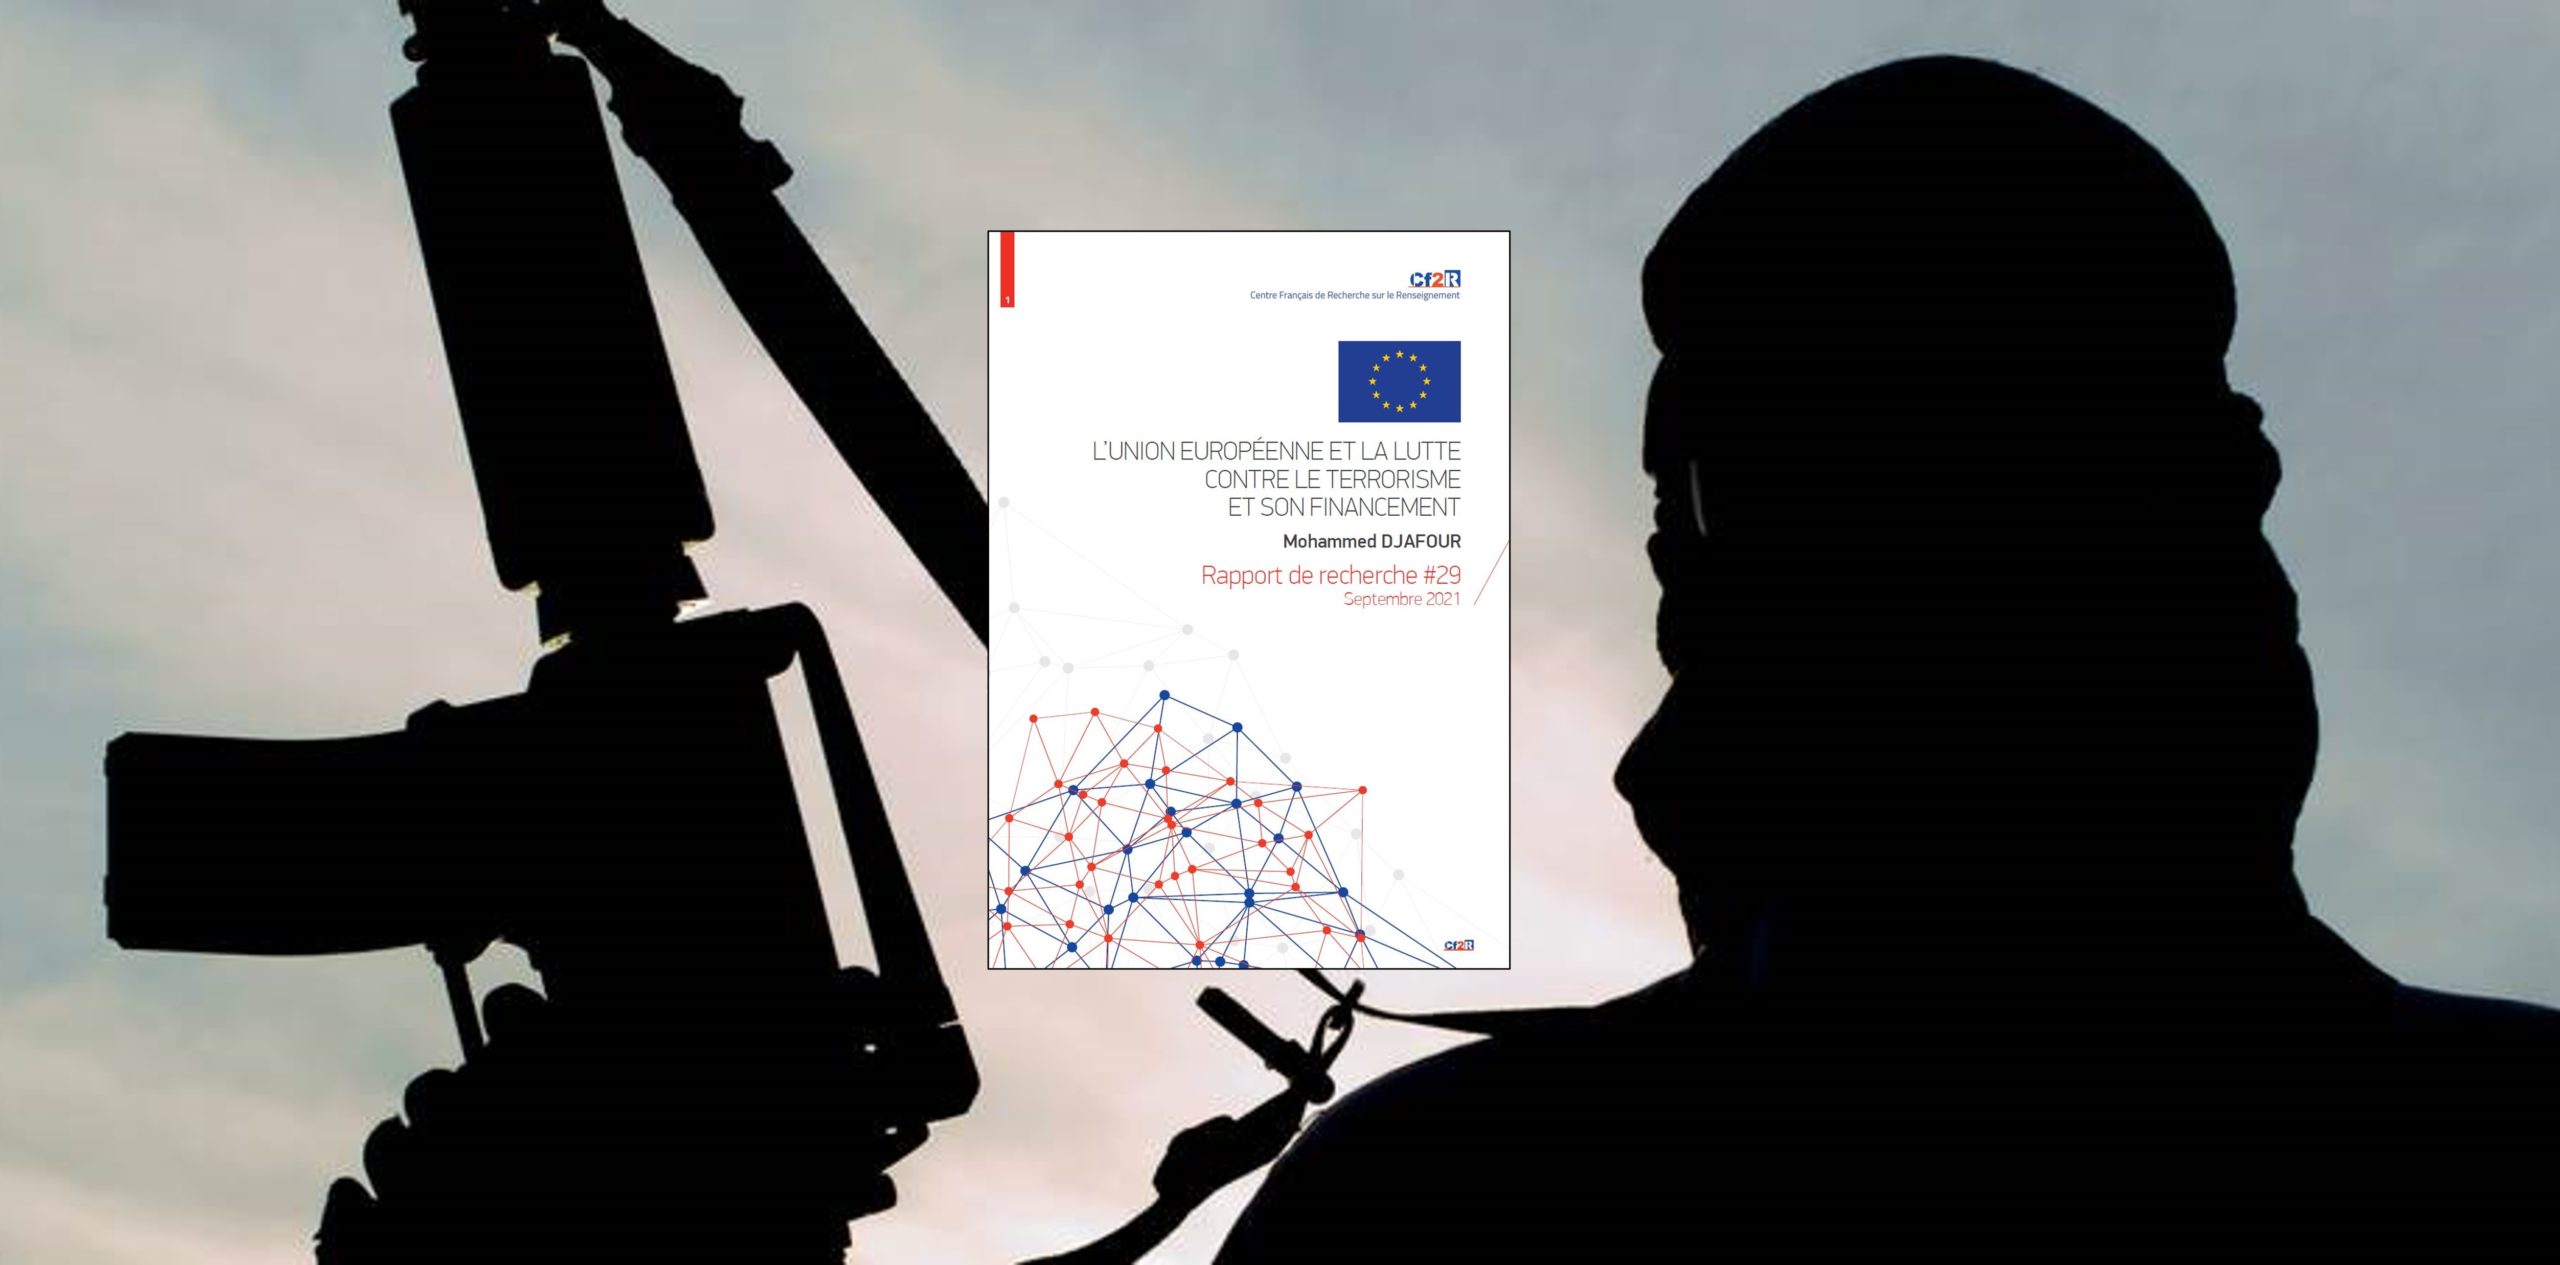 L’Union européenne et la lutte contre le terrorisme et son financement  (Rapport de recherche du CF2R)